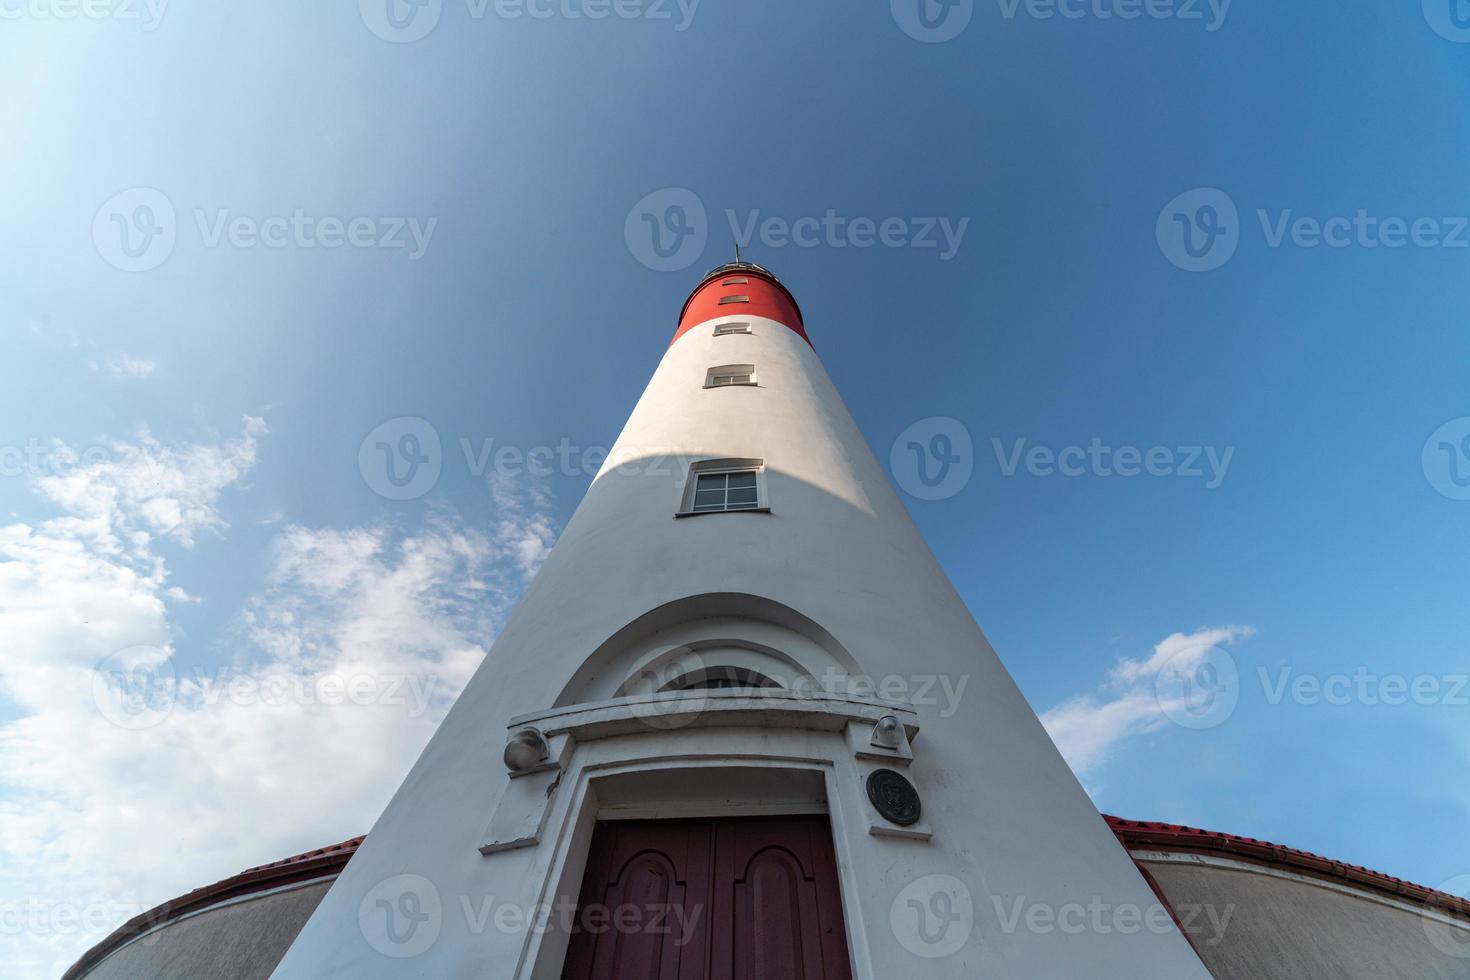 Baltische vuurtoren, rode witte kleuren, onderaanzicht. meest westelijke Russische vuurtoren in de stad Baltiysk. mooi zonnig weer. foto